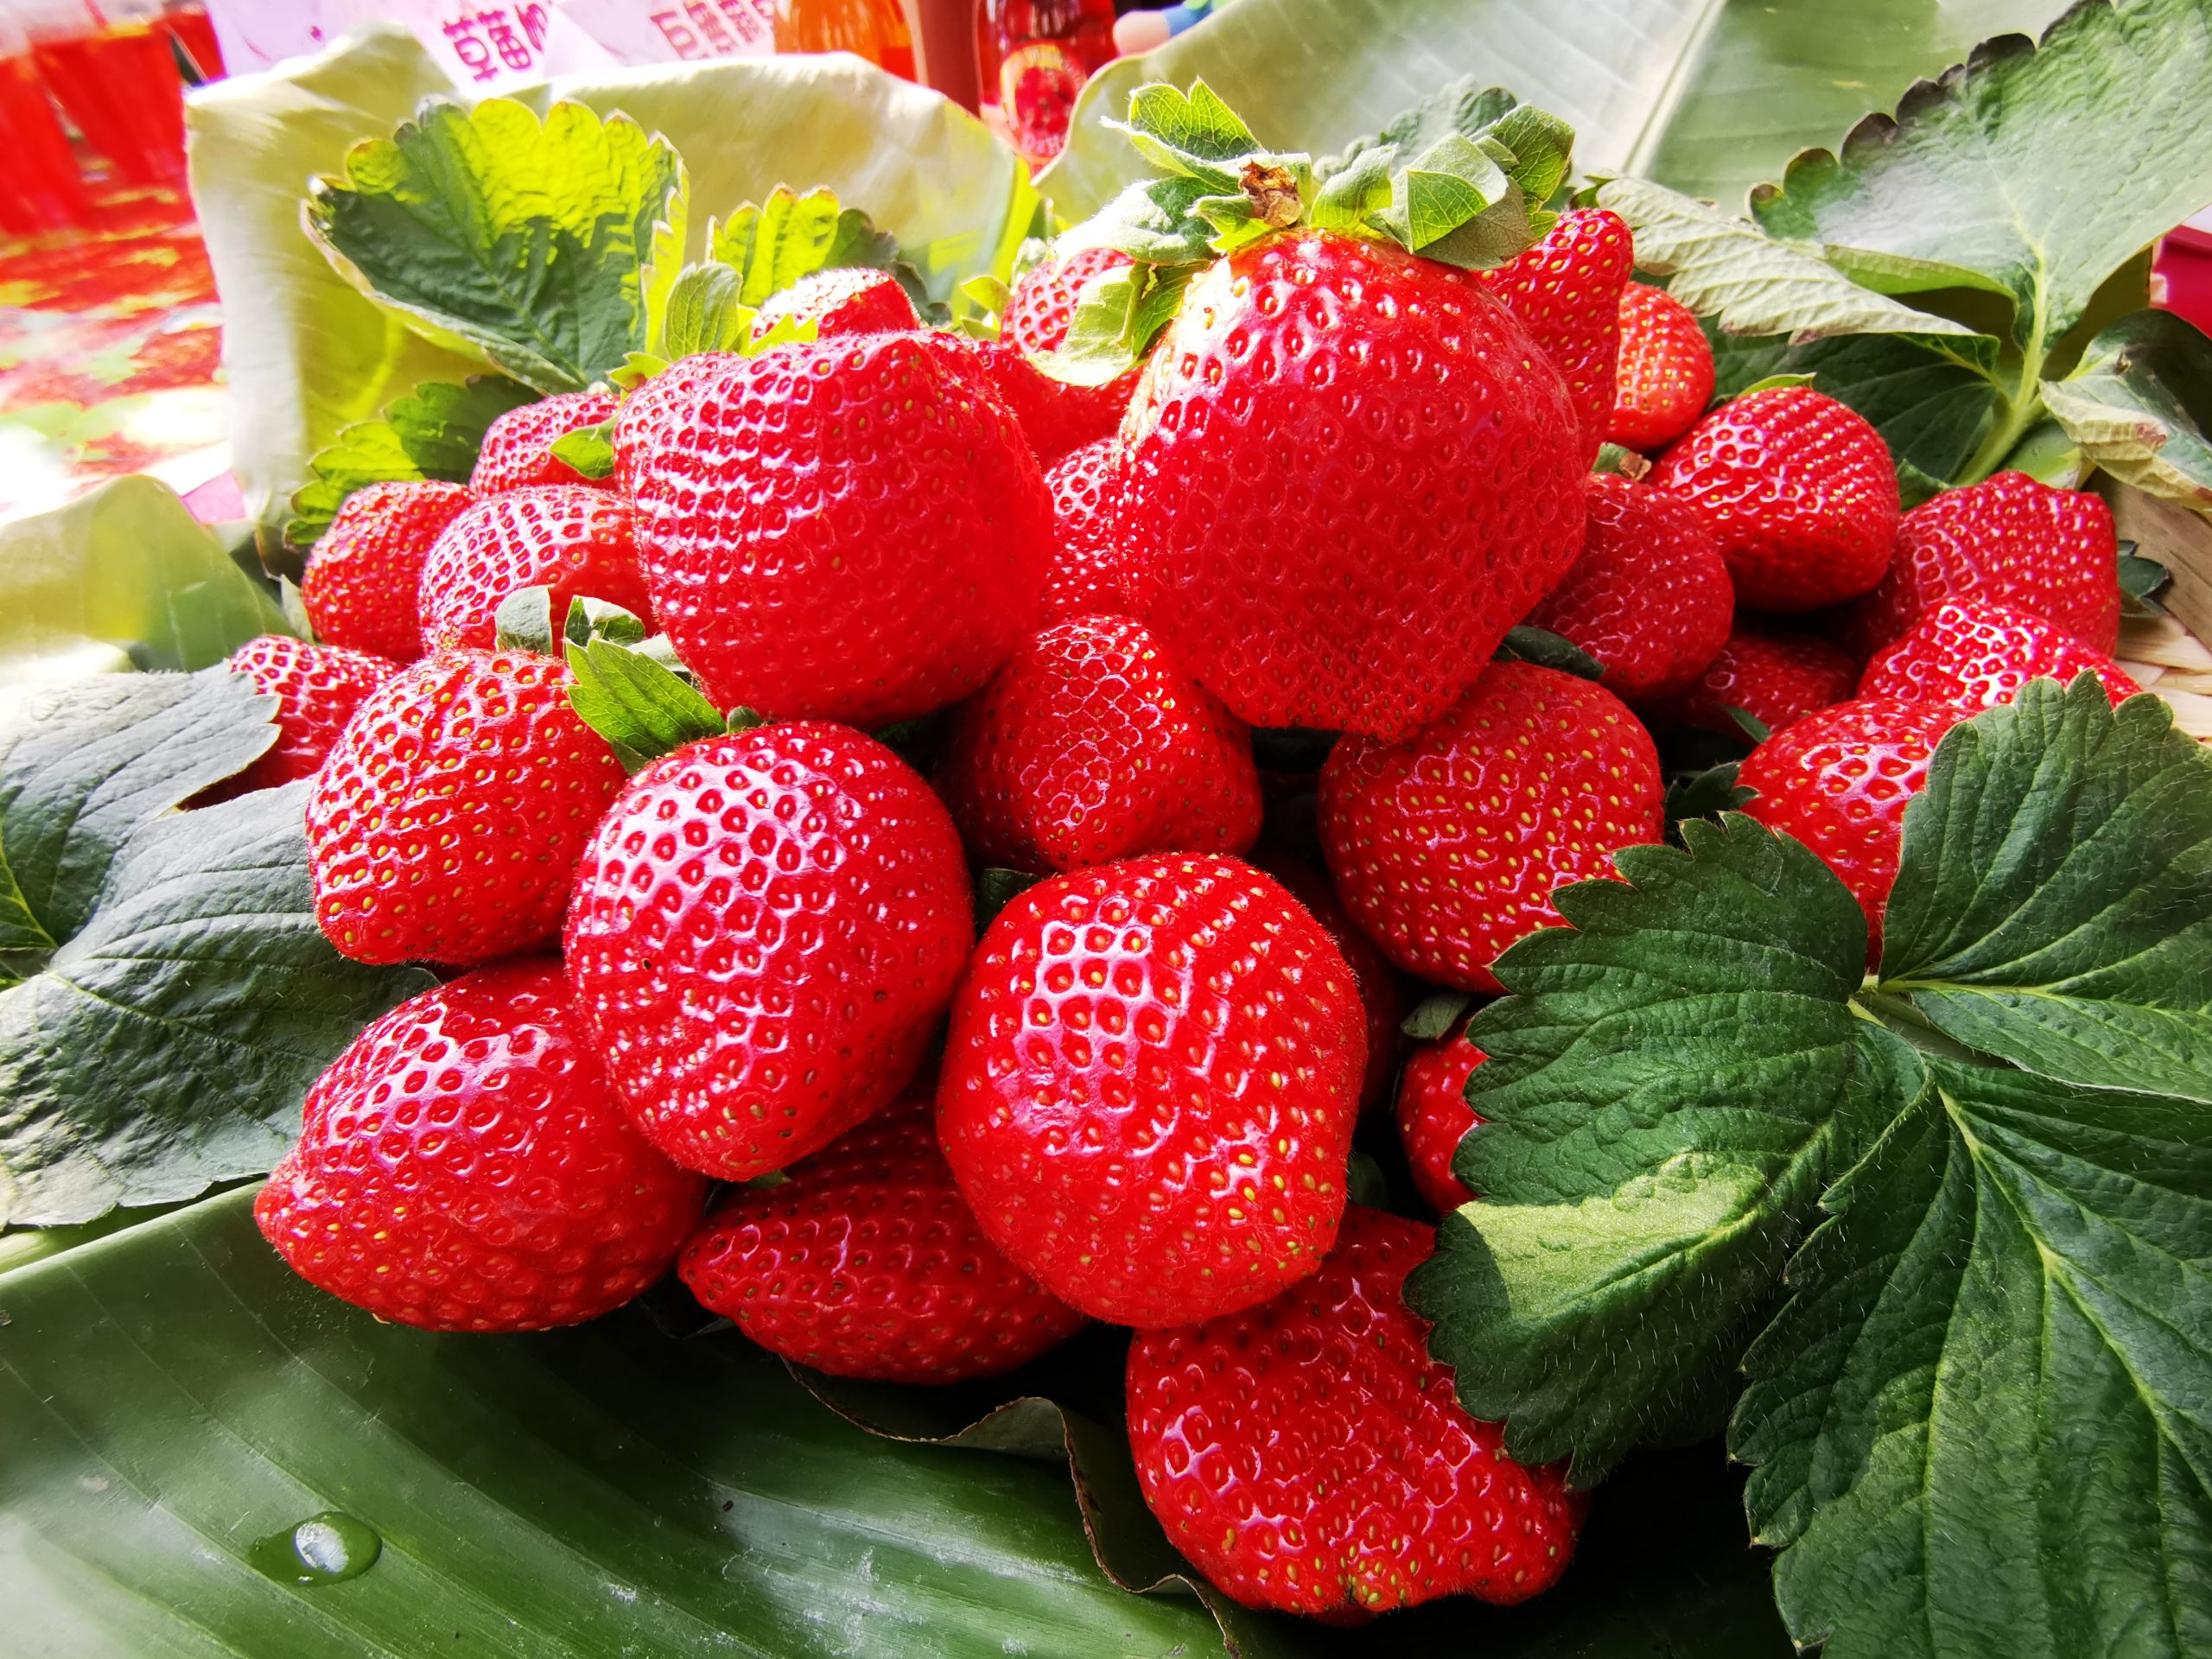 大湖草莓紅了 歡迎大家來苗栗採果、泡湯 ~